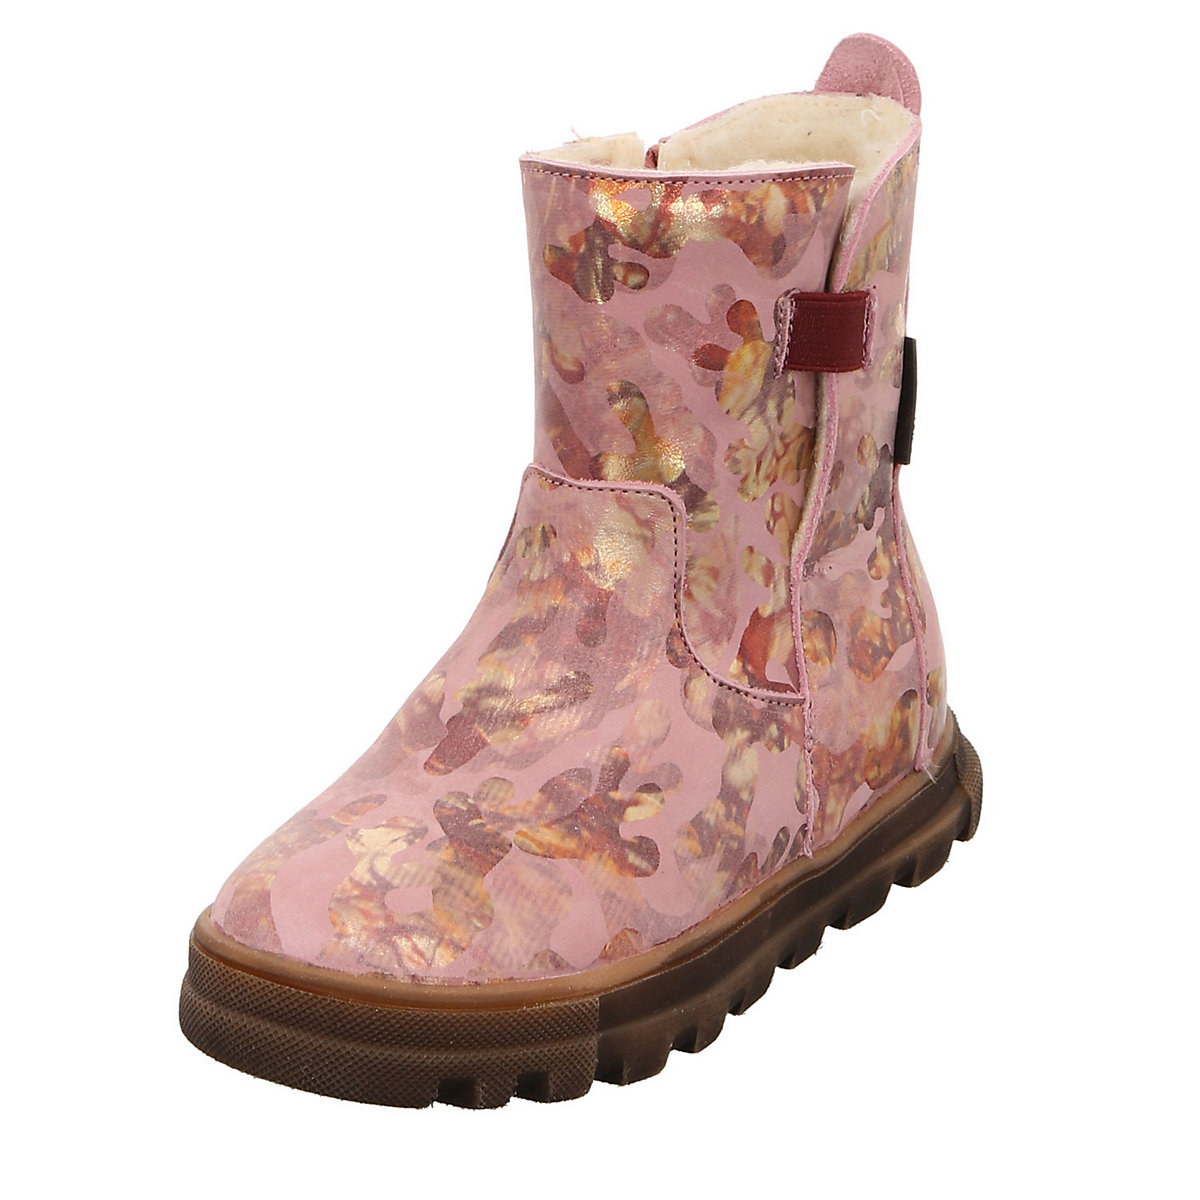 bundgaard Mädchen Stiefel Schuhe Nadia Tex Boots Kinderschuhe Glattleder gemustert Stiefeletten rosa